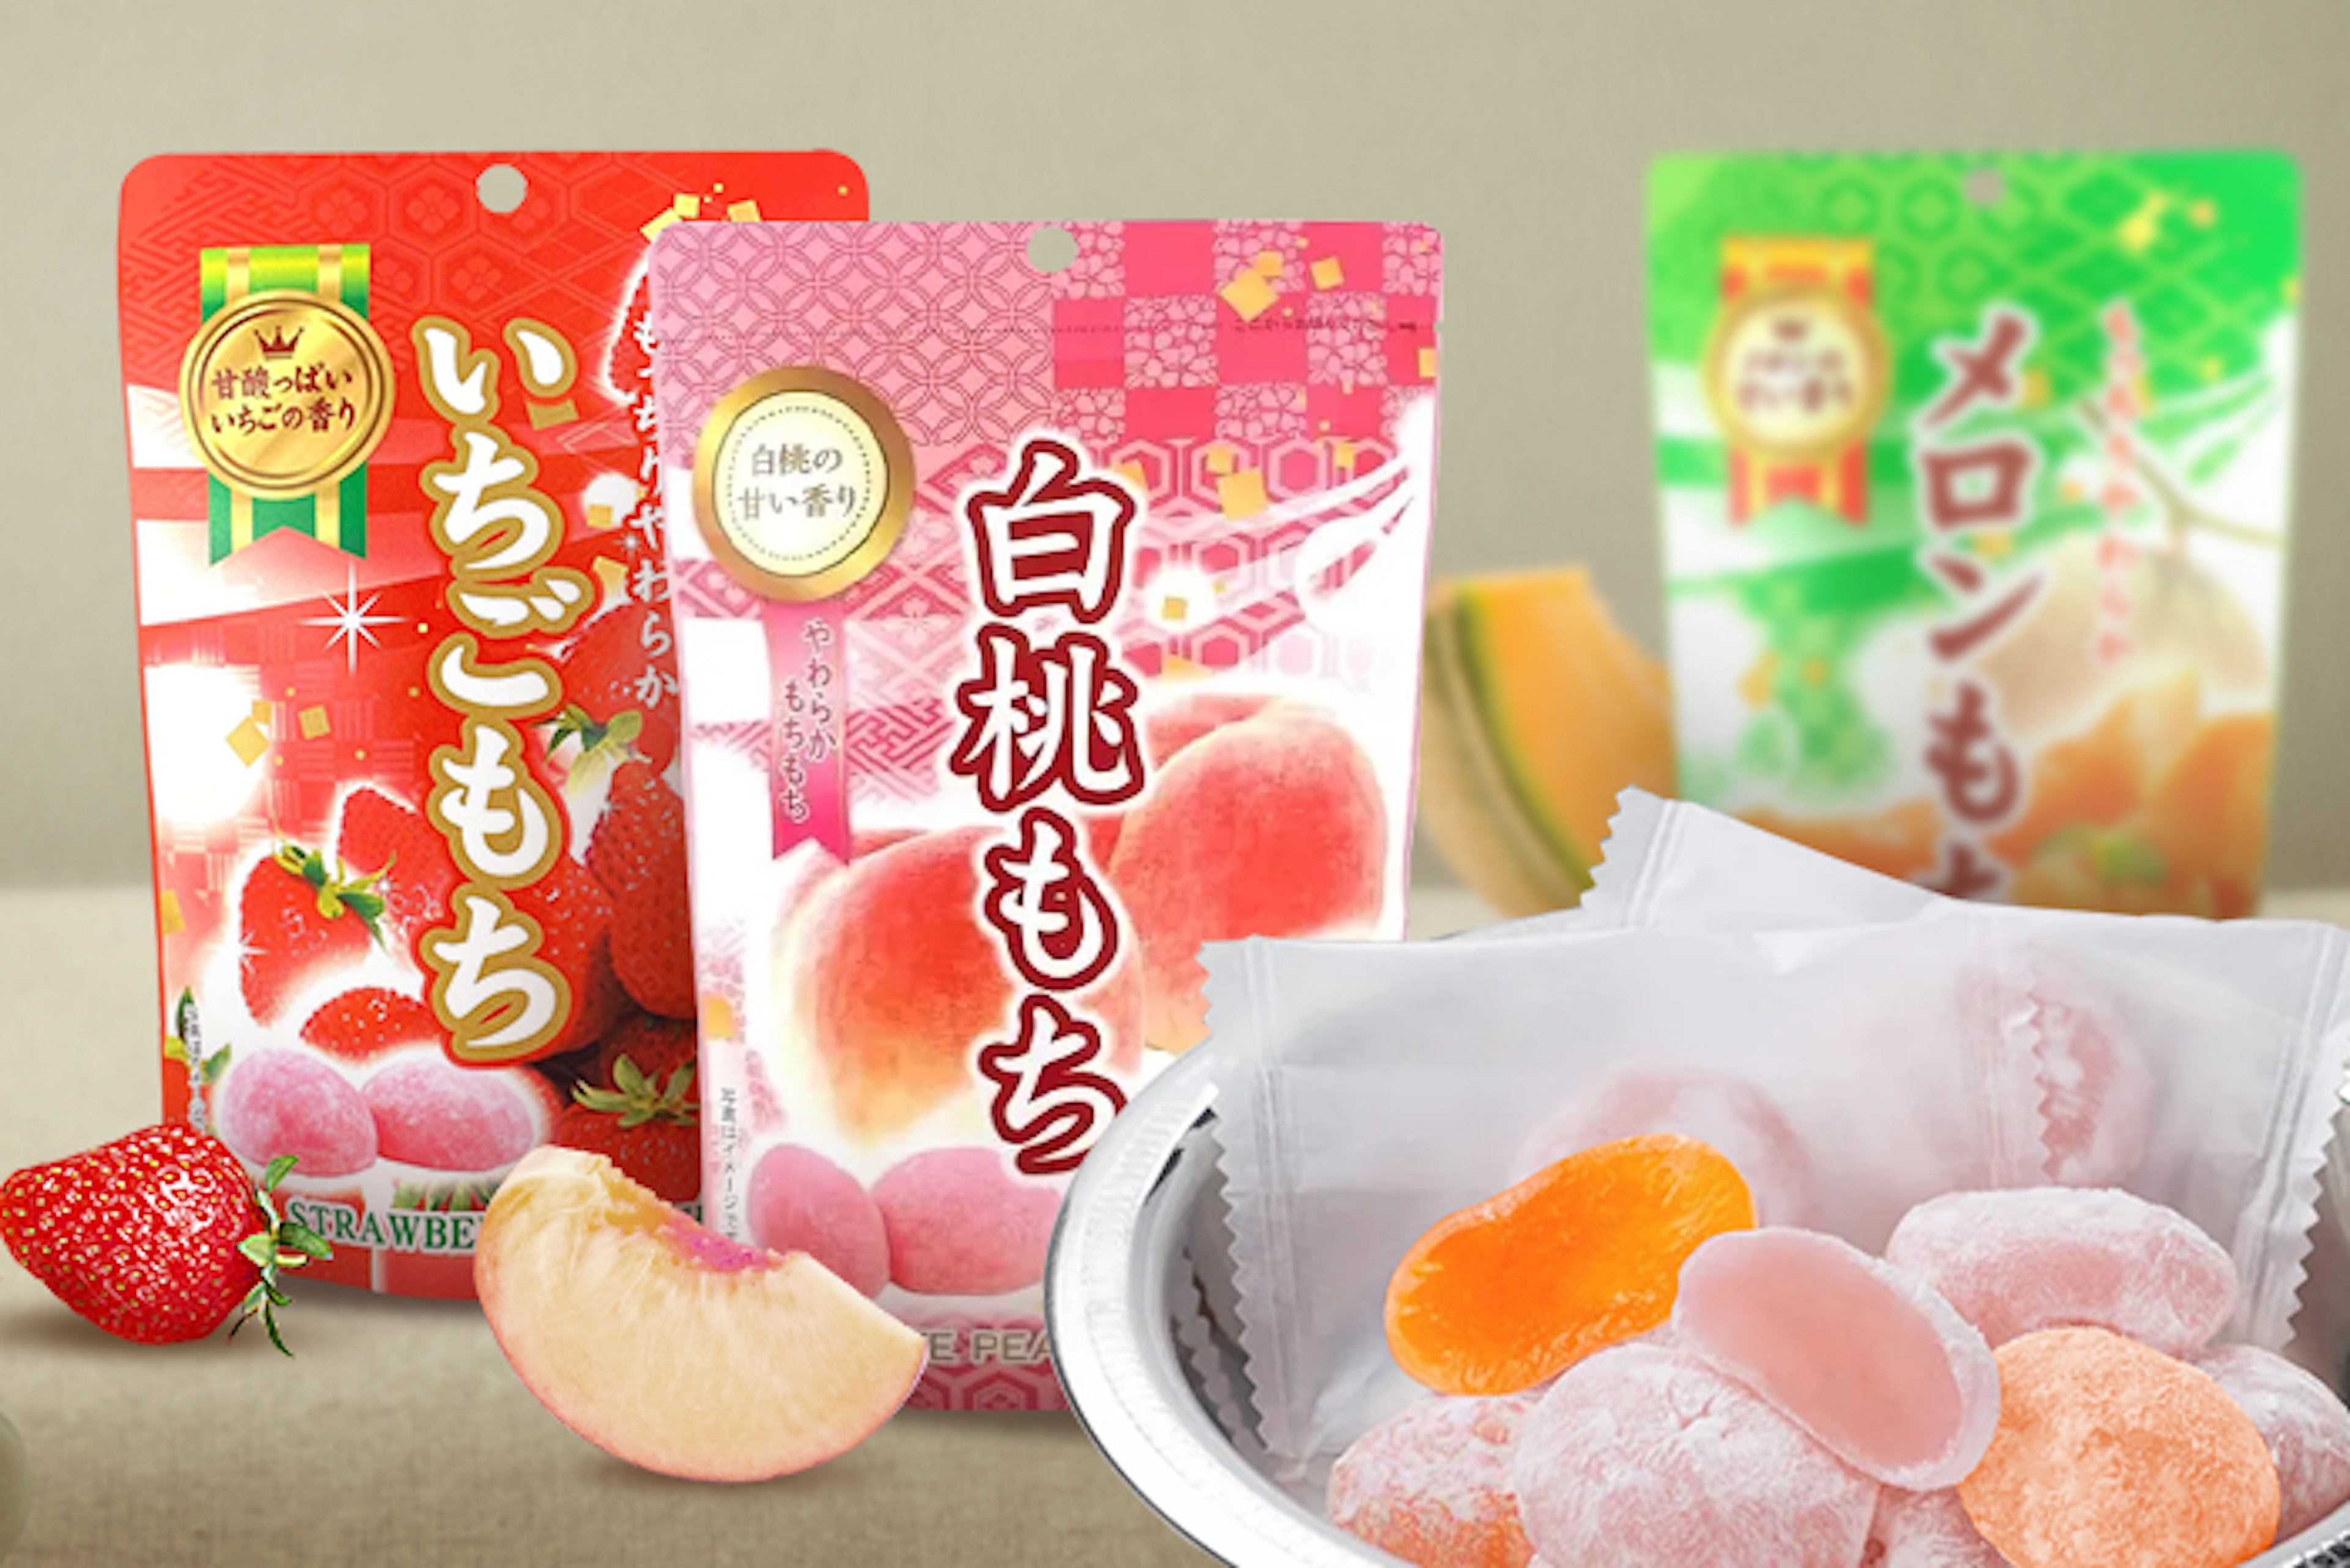 Vorderansicht der Seiki Mochi Pfirsich 130g Packung: Zeigt die bunte Verpackung mit einem Bild von saftigen Pfirsichen und den darin enthaltenen Mochi.